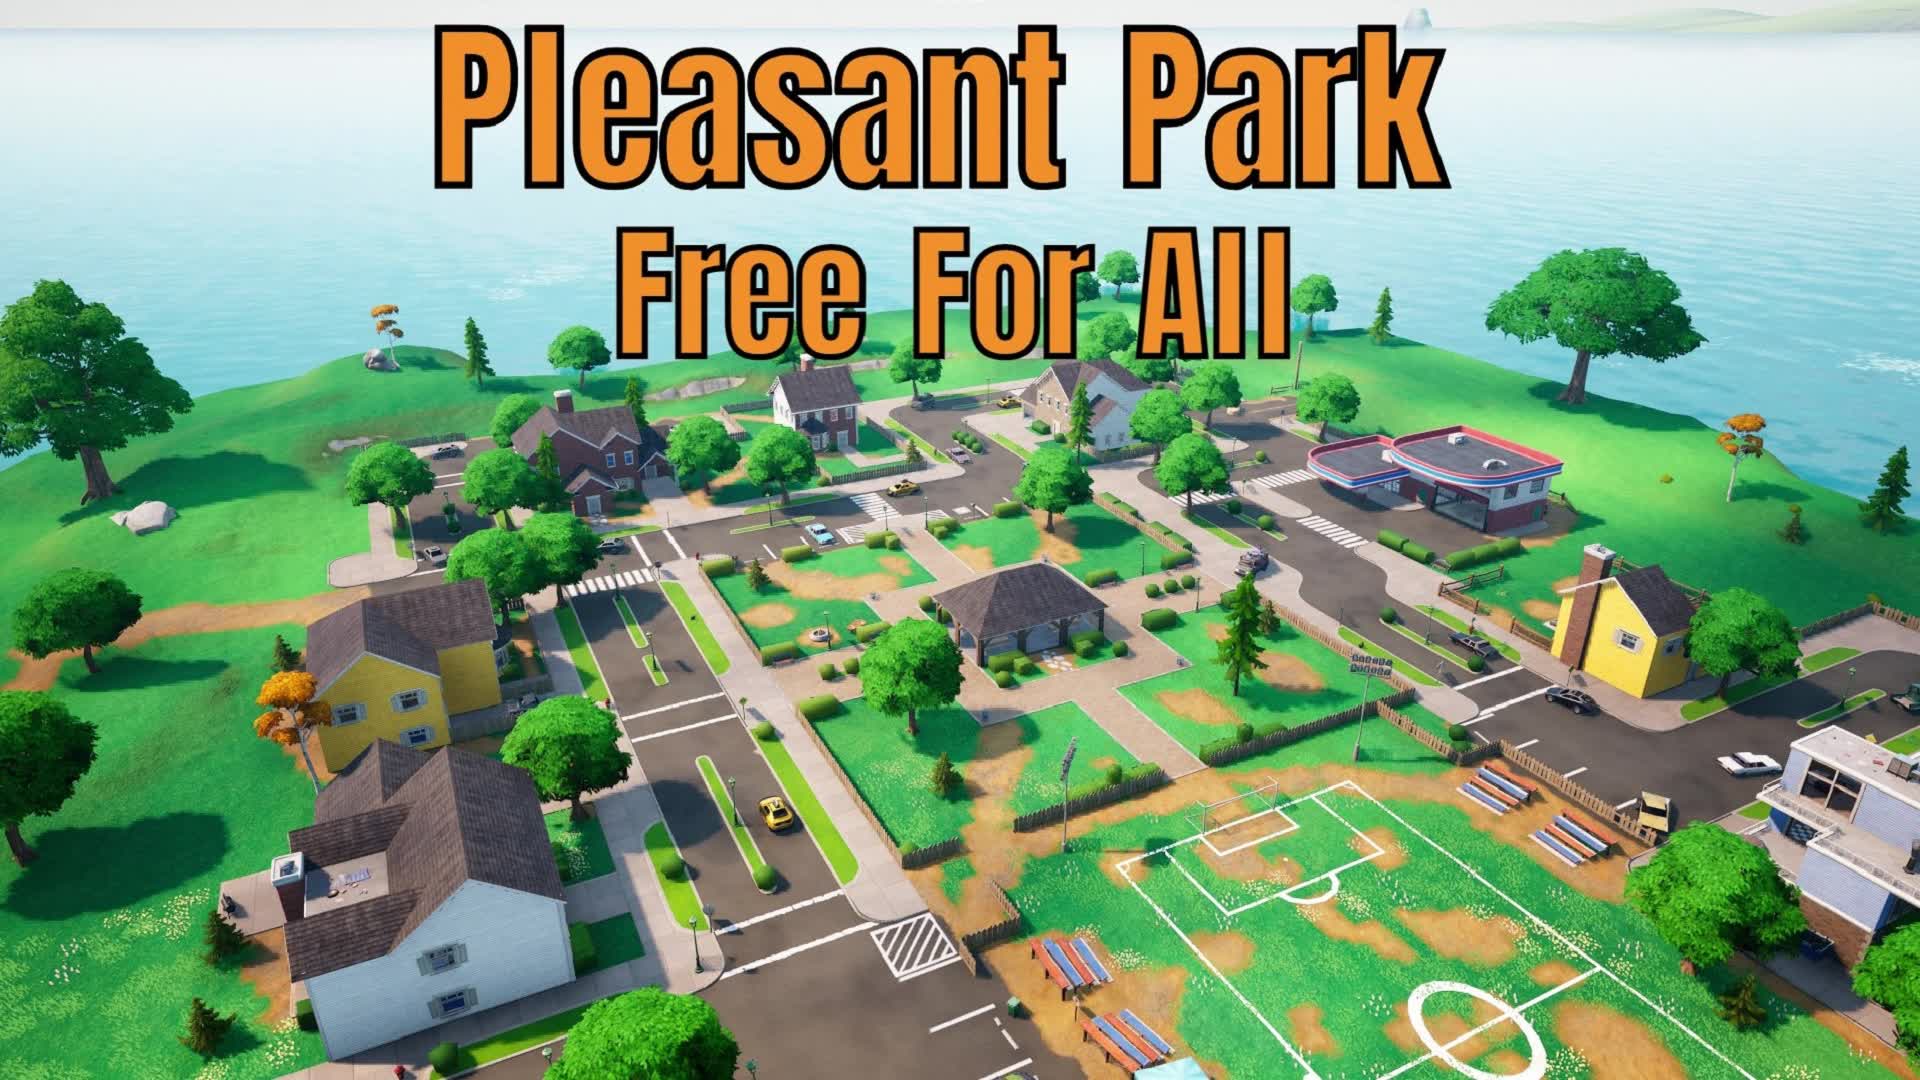 【注目の島】Pleasant Park - Free For All